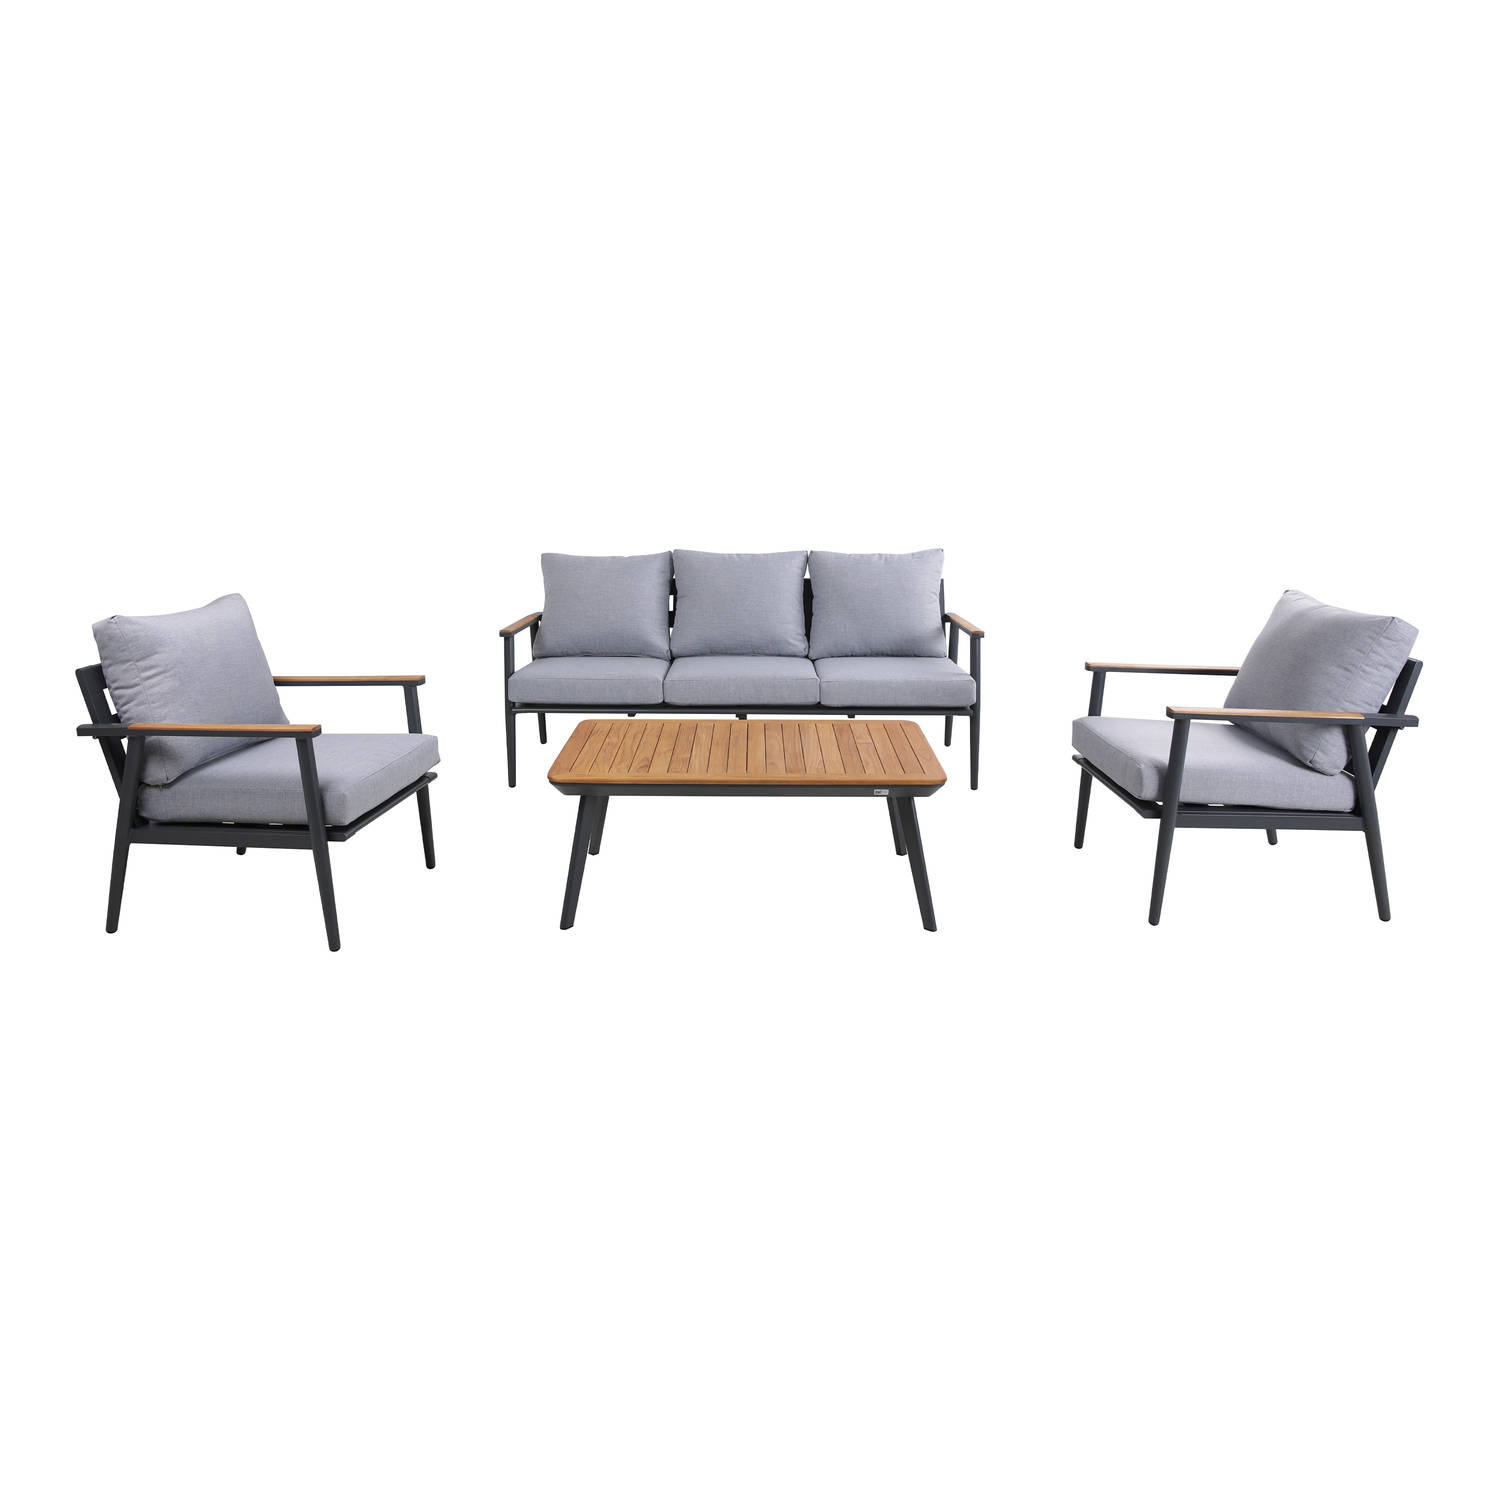 AXI Bibi Stoel-bank Loungeset 4-delig Antraciet-Teak Lounge Set met 2 stoelen, bank & tuintafel van 